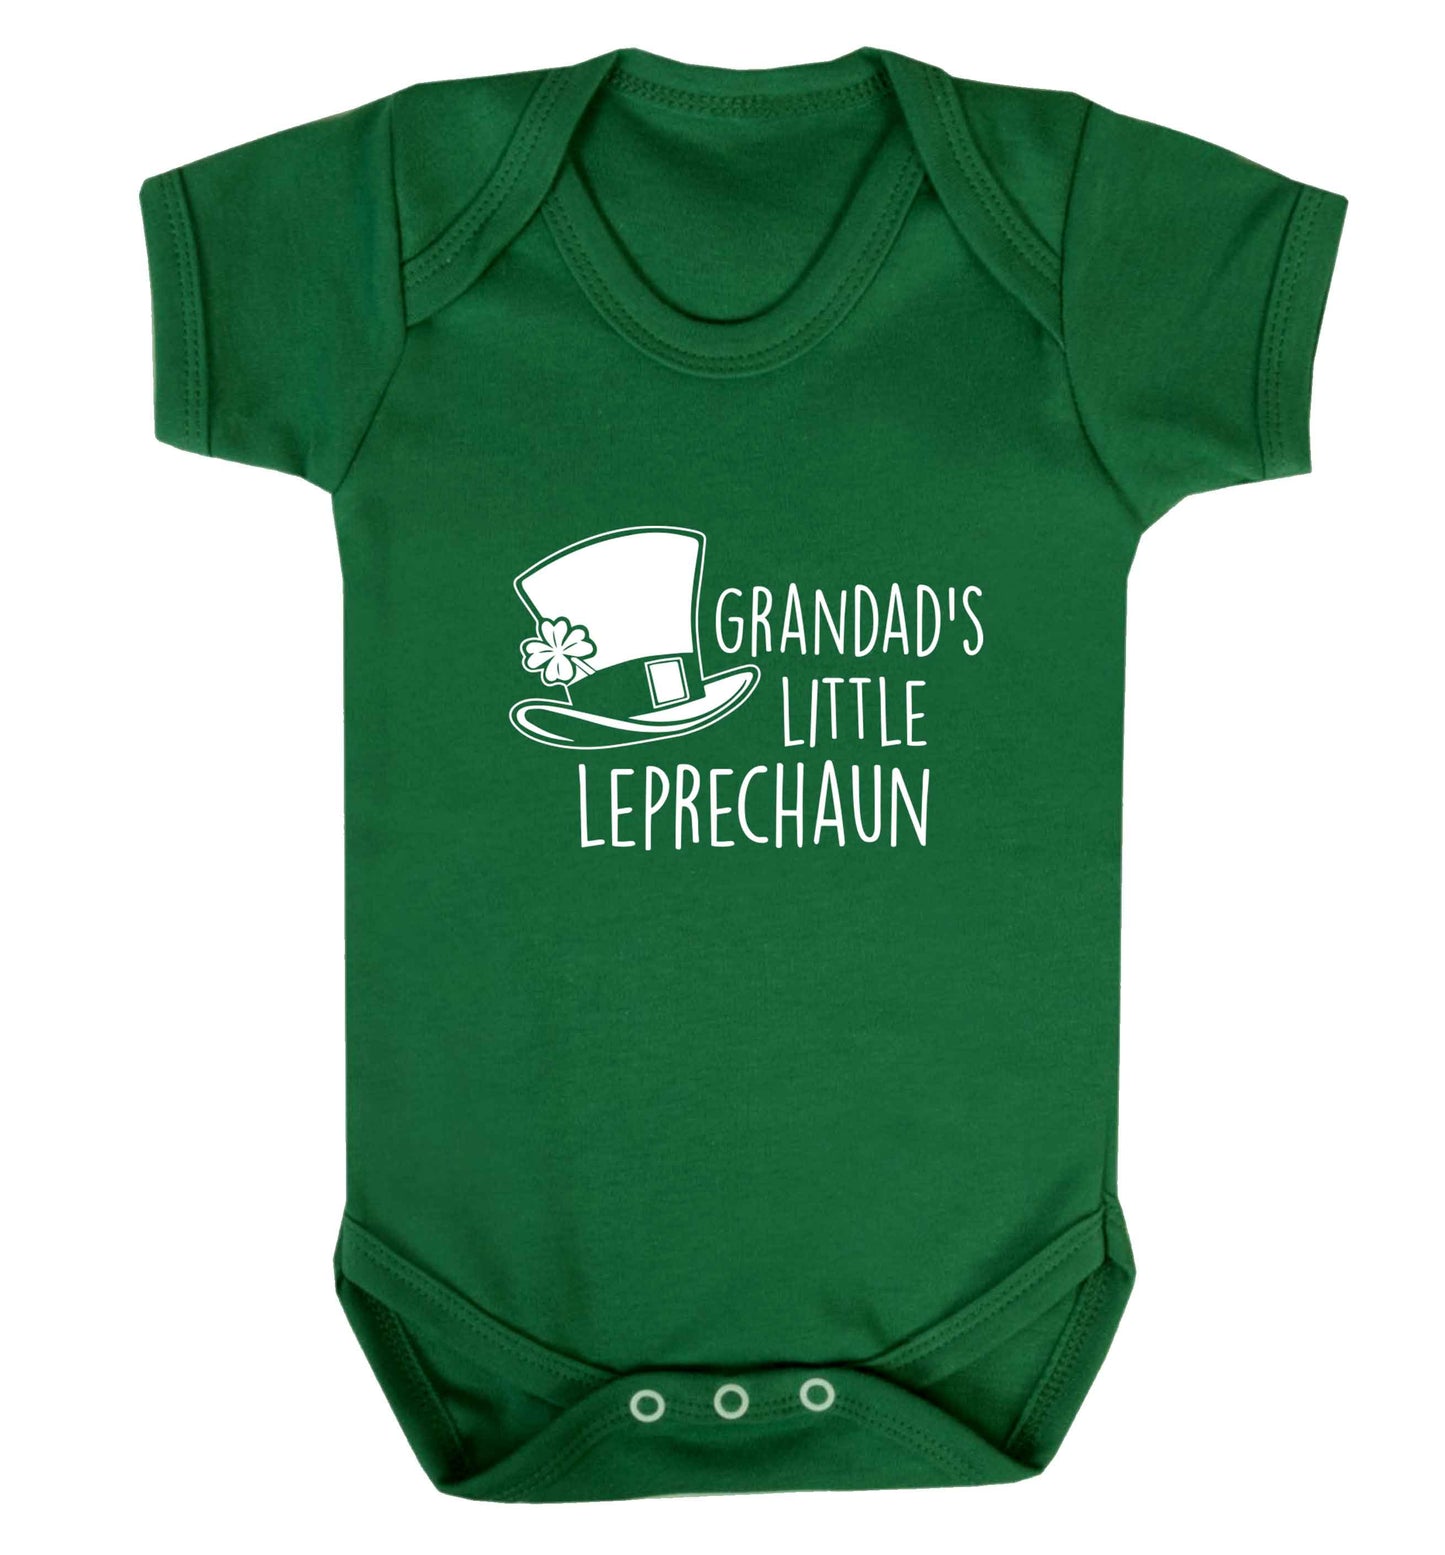 Grandad's little leprechaun baby vest green 18-24 months